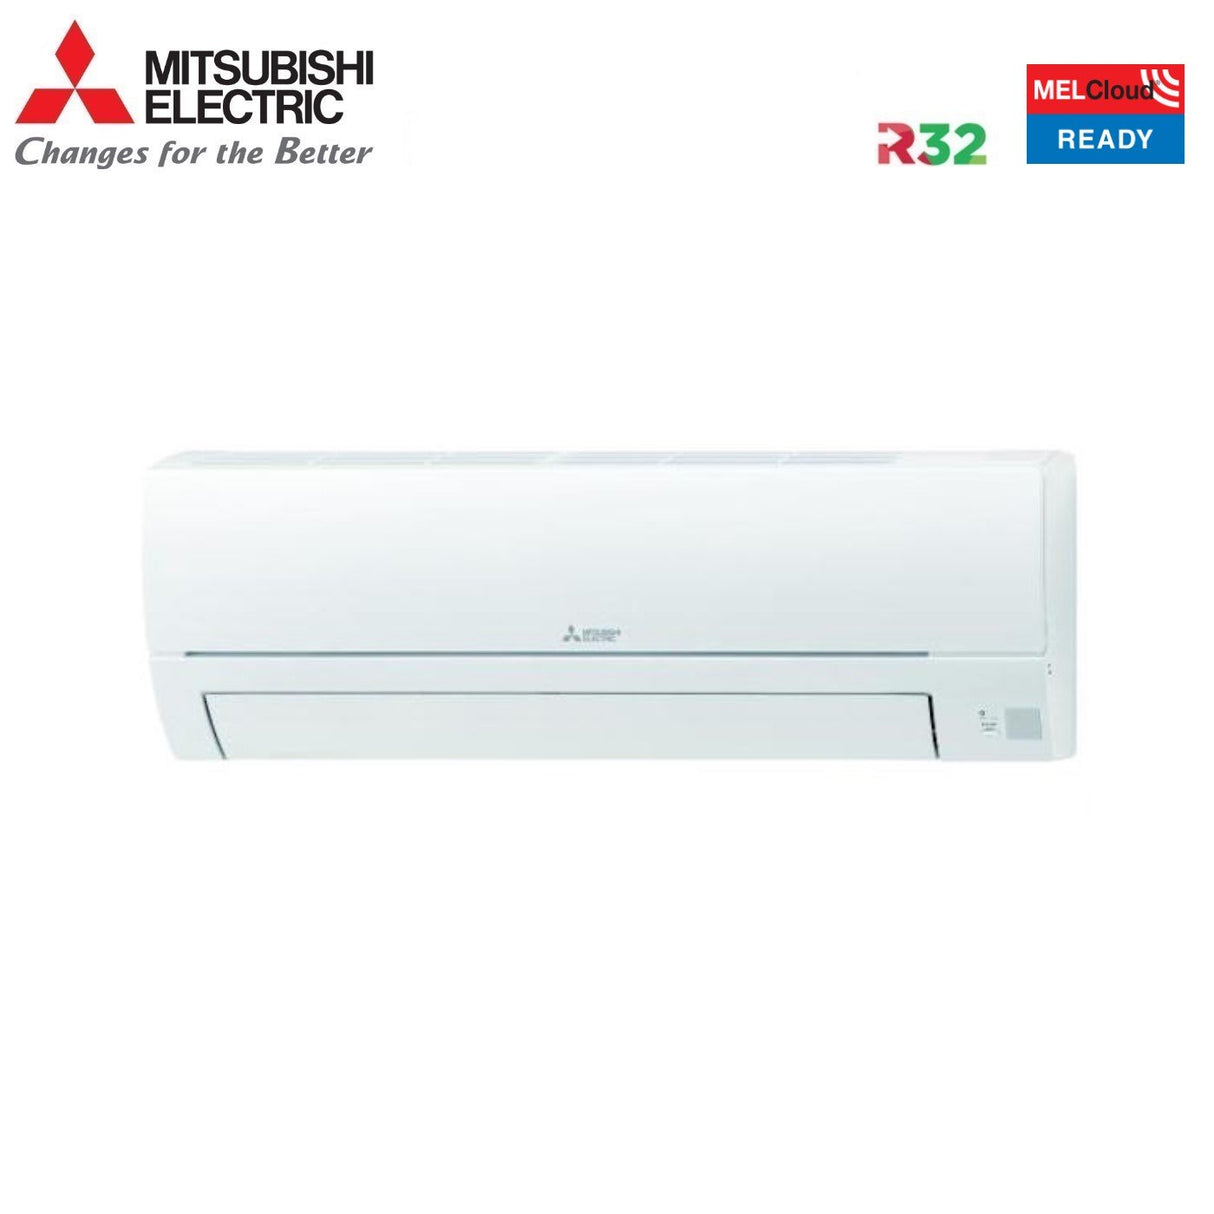 immagine-3-mitsubishi-electric-climatizzatore-condizionatore-mitsubishi-electric-dual-split-inverter-serie-smart-msz-hr-915-con-mxz-2ha50vf-r-32-wi-fi-optional-900015000-ean-8059657010551